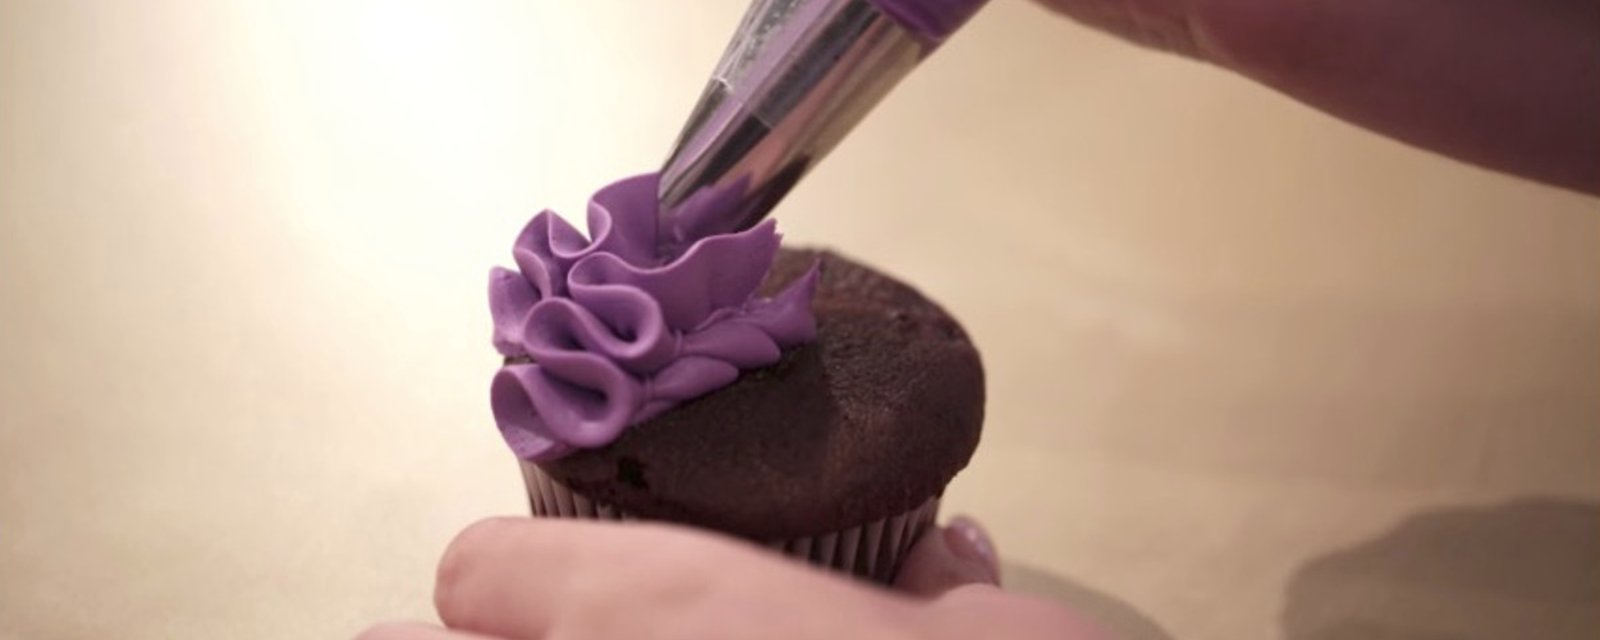 8 incroyables façons de décorer vos cupcakes avec 1 seule douille! 